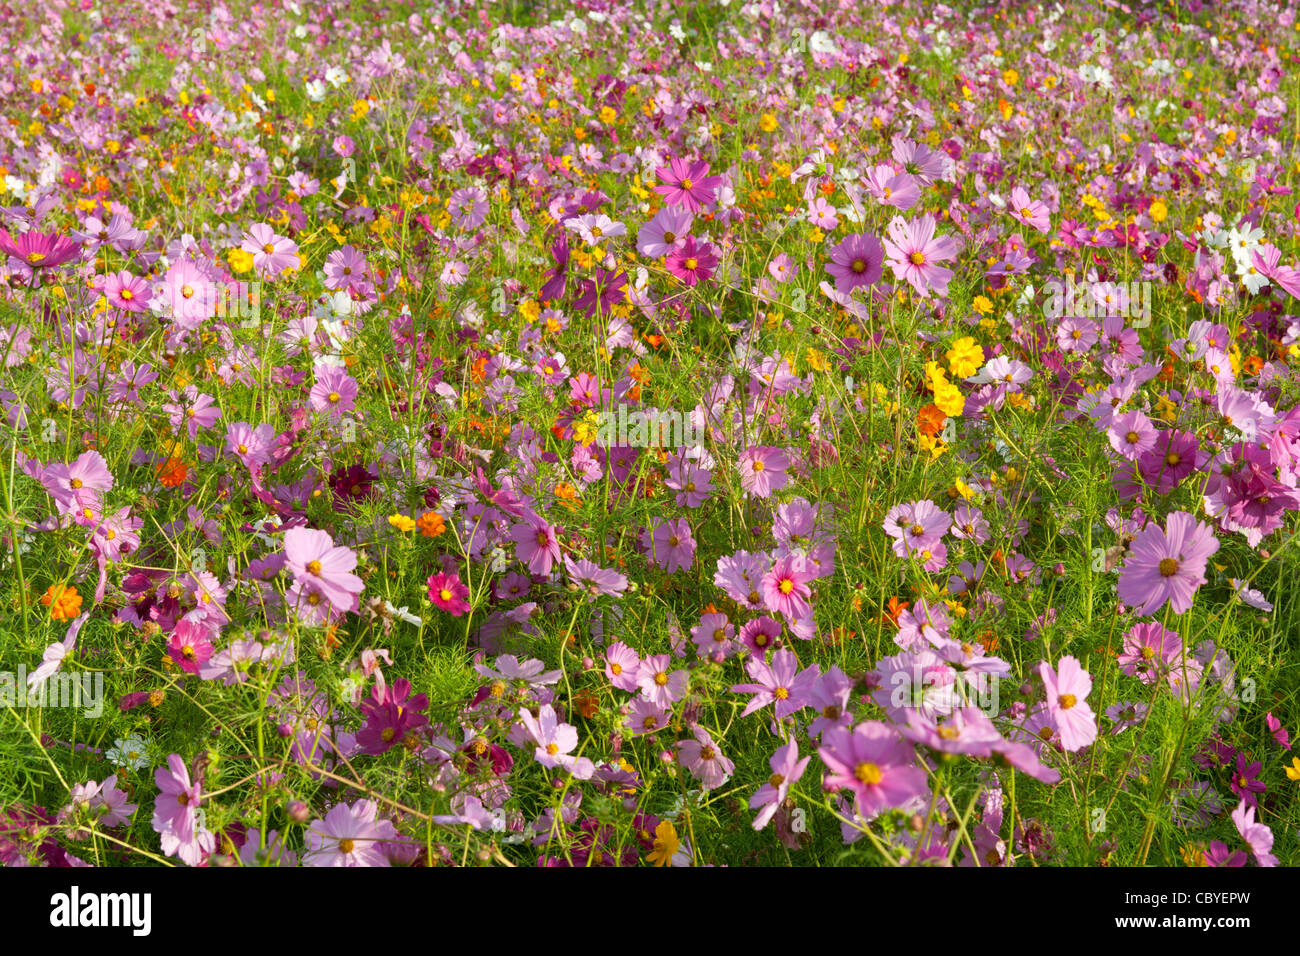 Summer wildflowers. Stock Photo